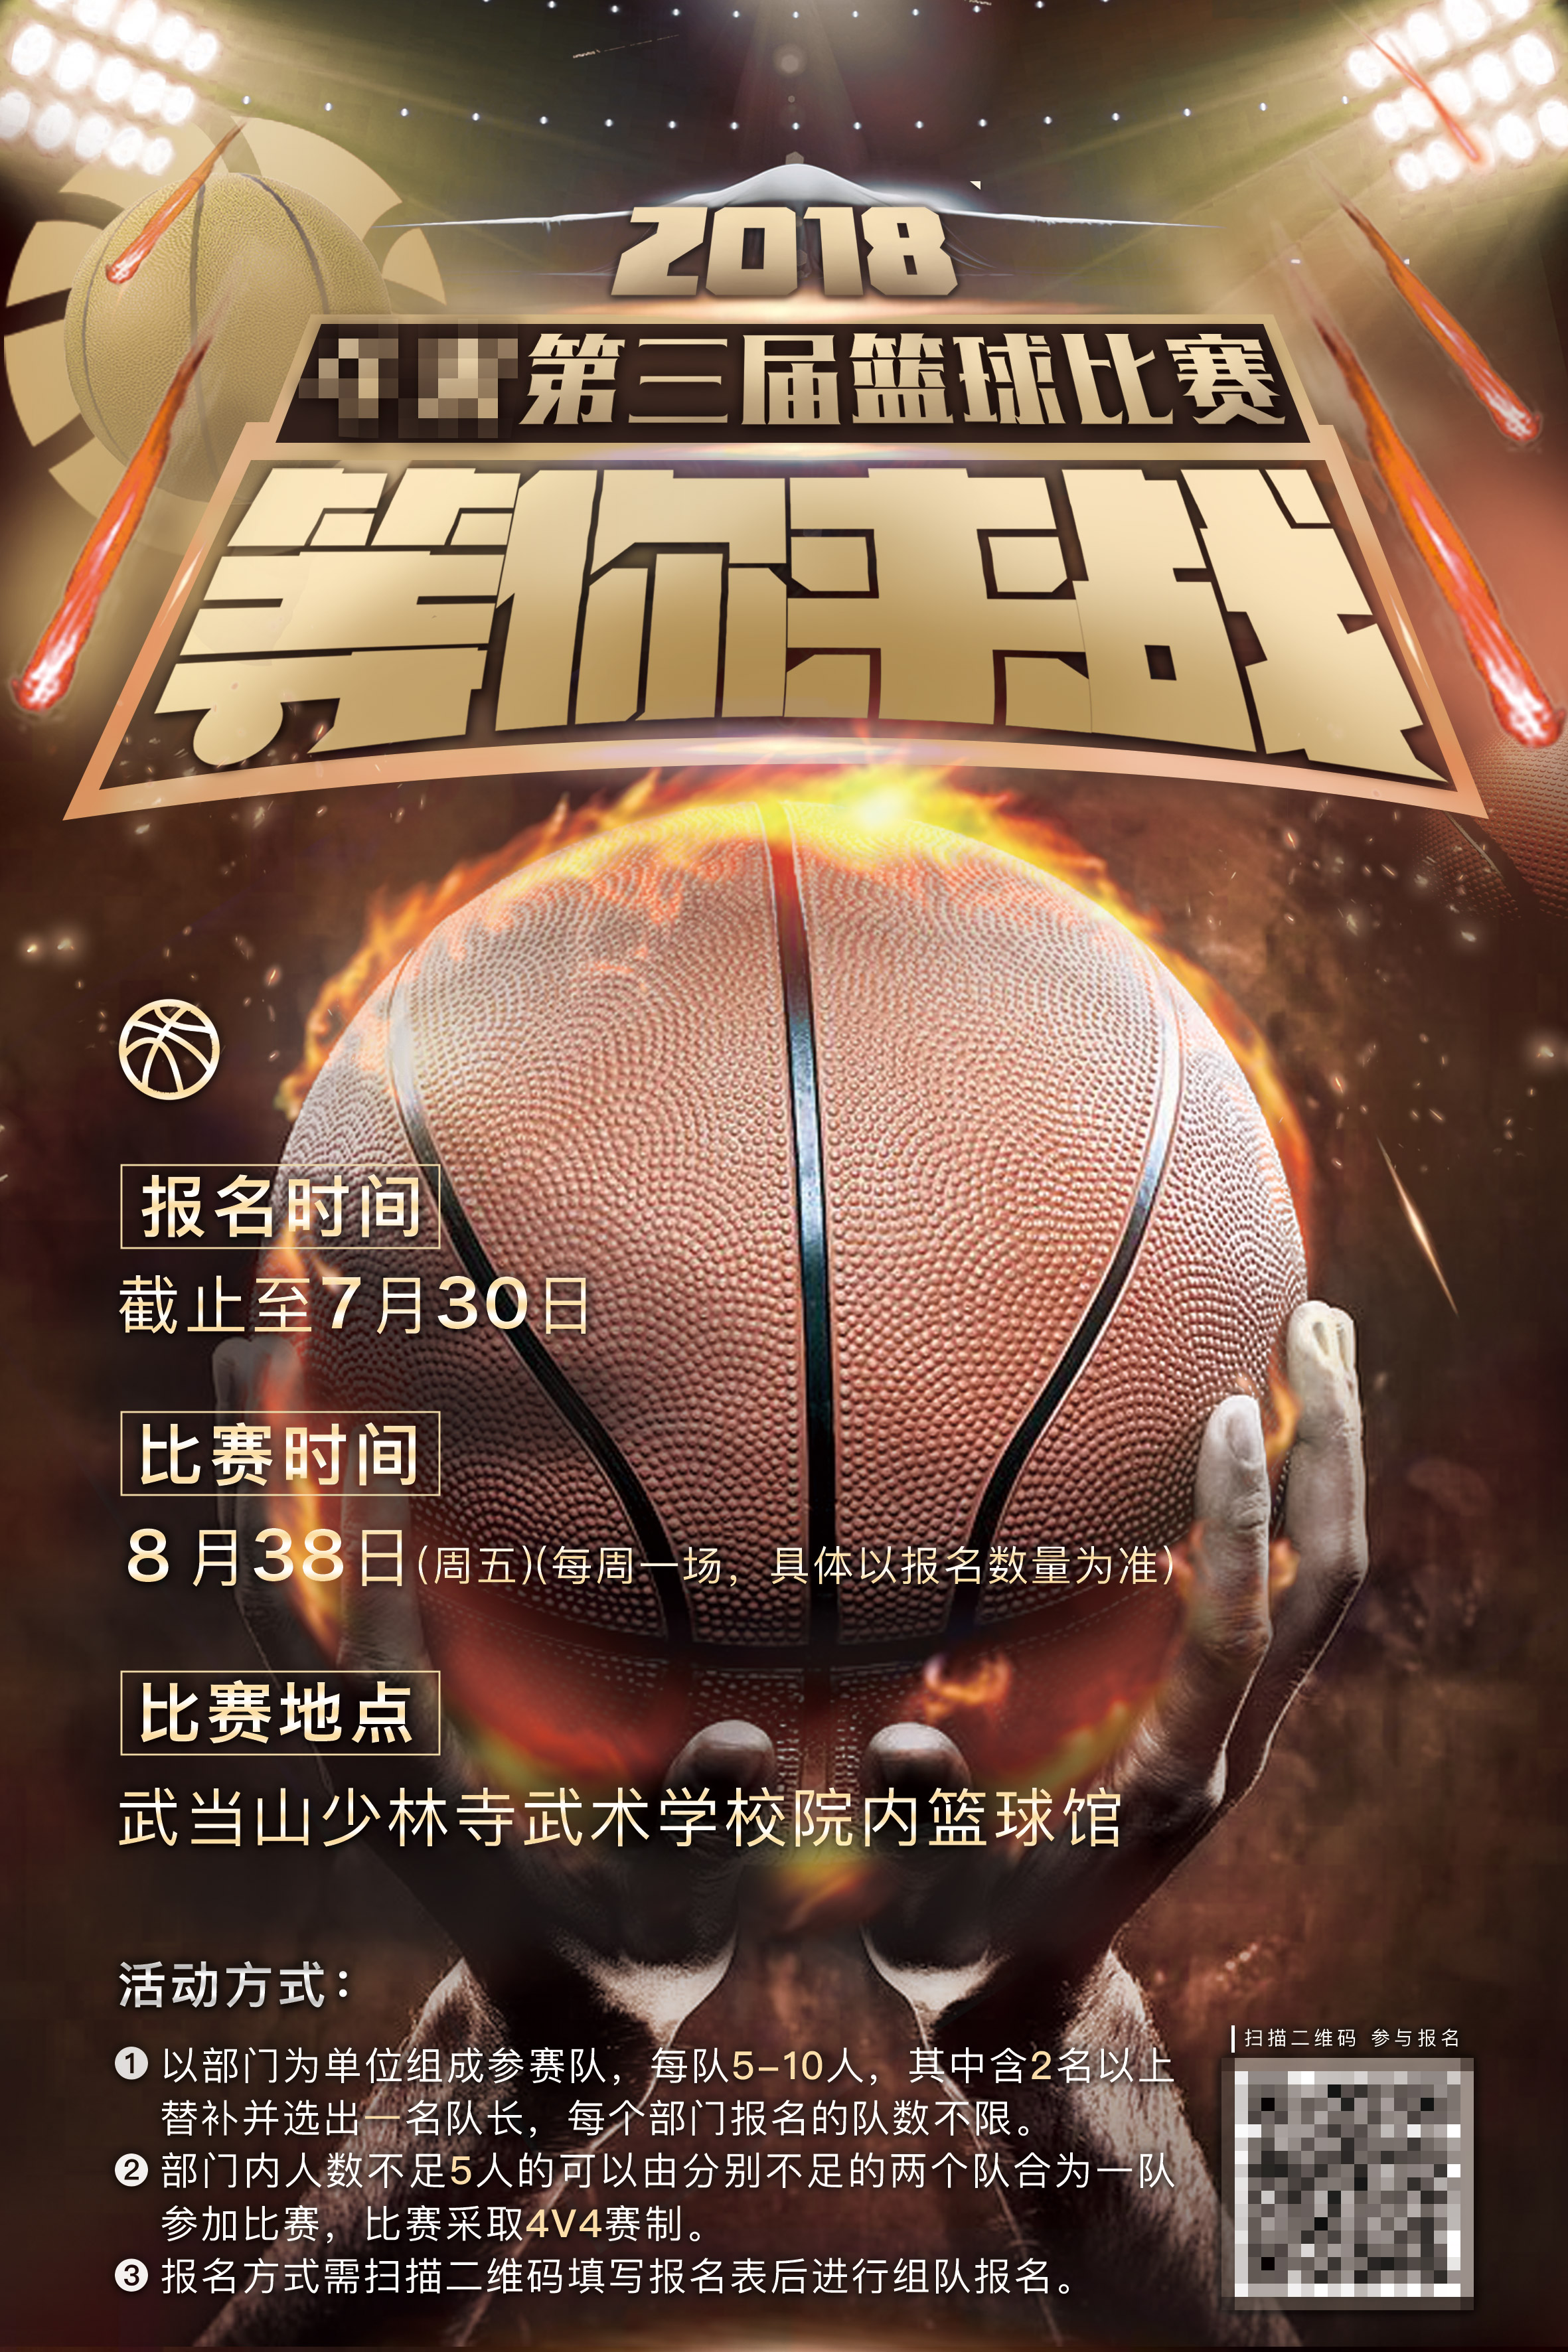 篮球赛宣传海报文字图片